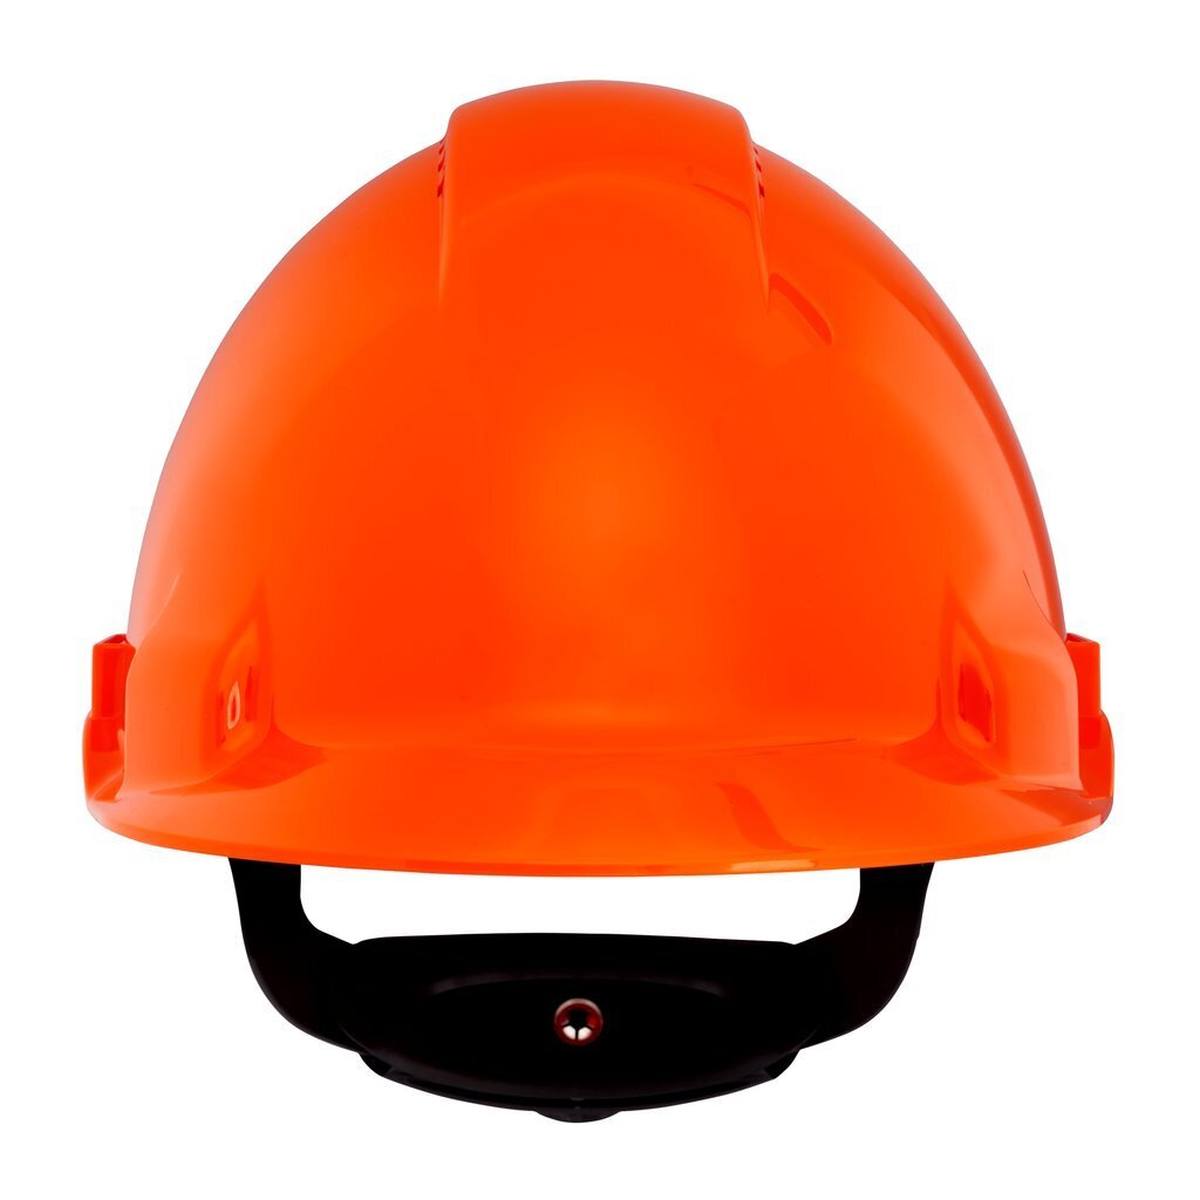 3M G3000 casque de protection G30NUO en orange, ventilé, avec uvicator, cliquet et bande de soudure en plastique